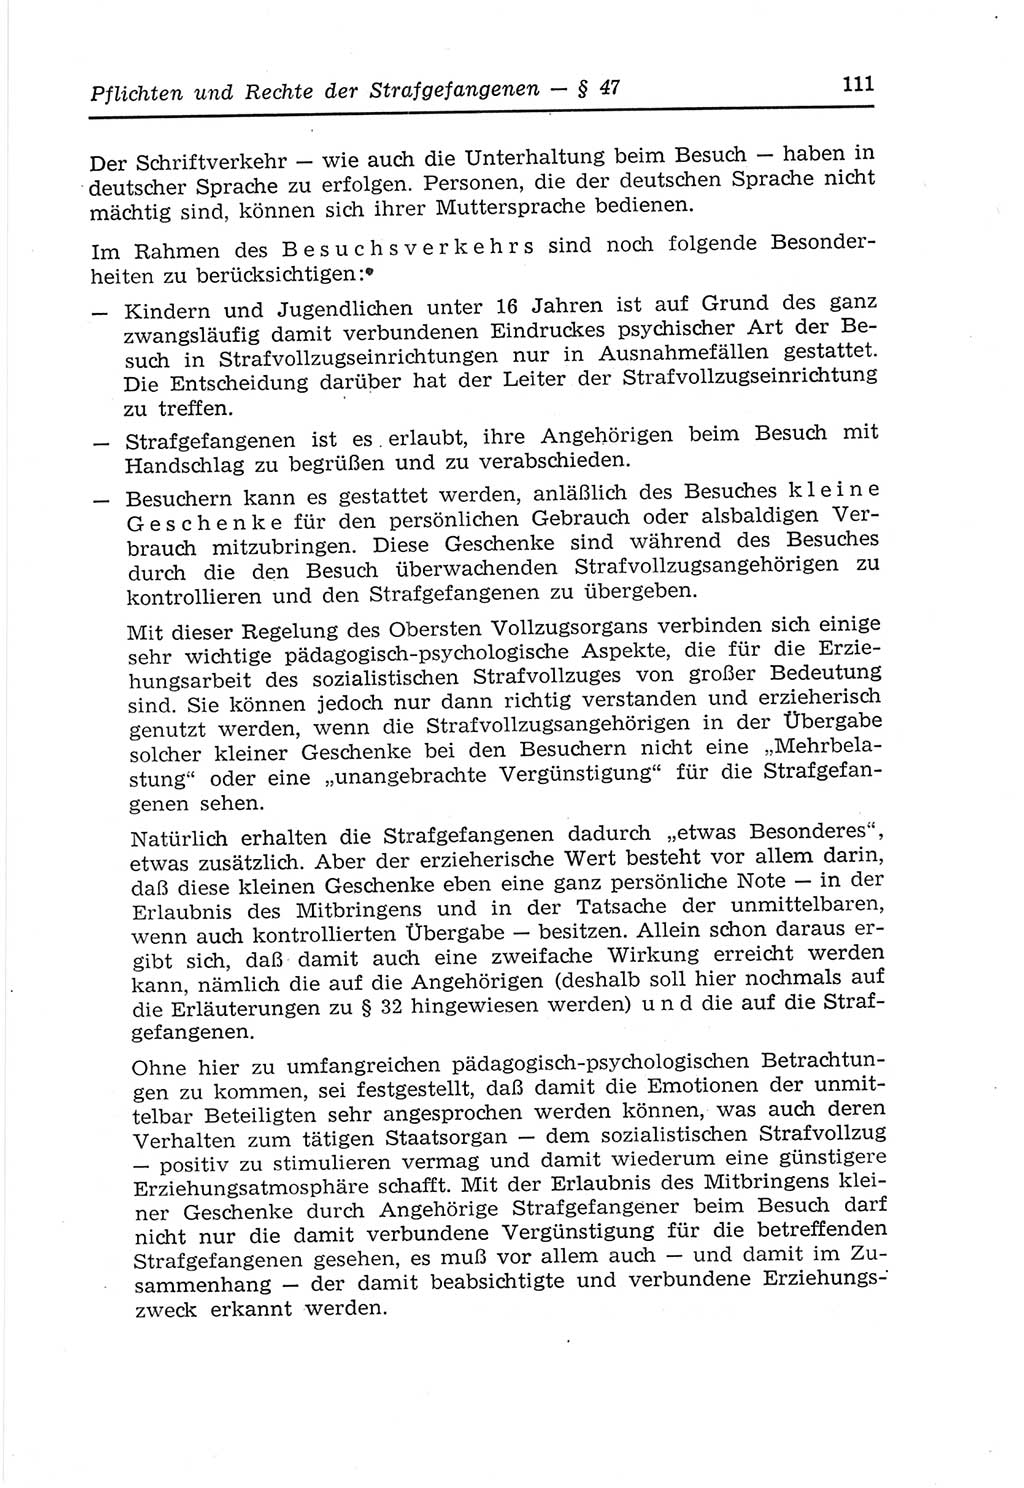 Strafvollzugs- und Wiedereingliederungsgesetz (SVWG) der Deutschen Demokratischen Republik (DDR) 1968, Seite 111 (SVWG DDR 1968, S. 111)